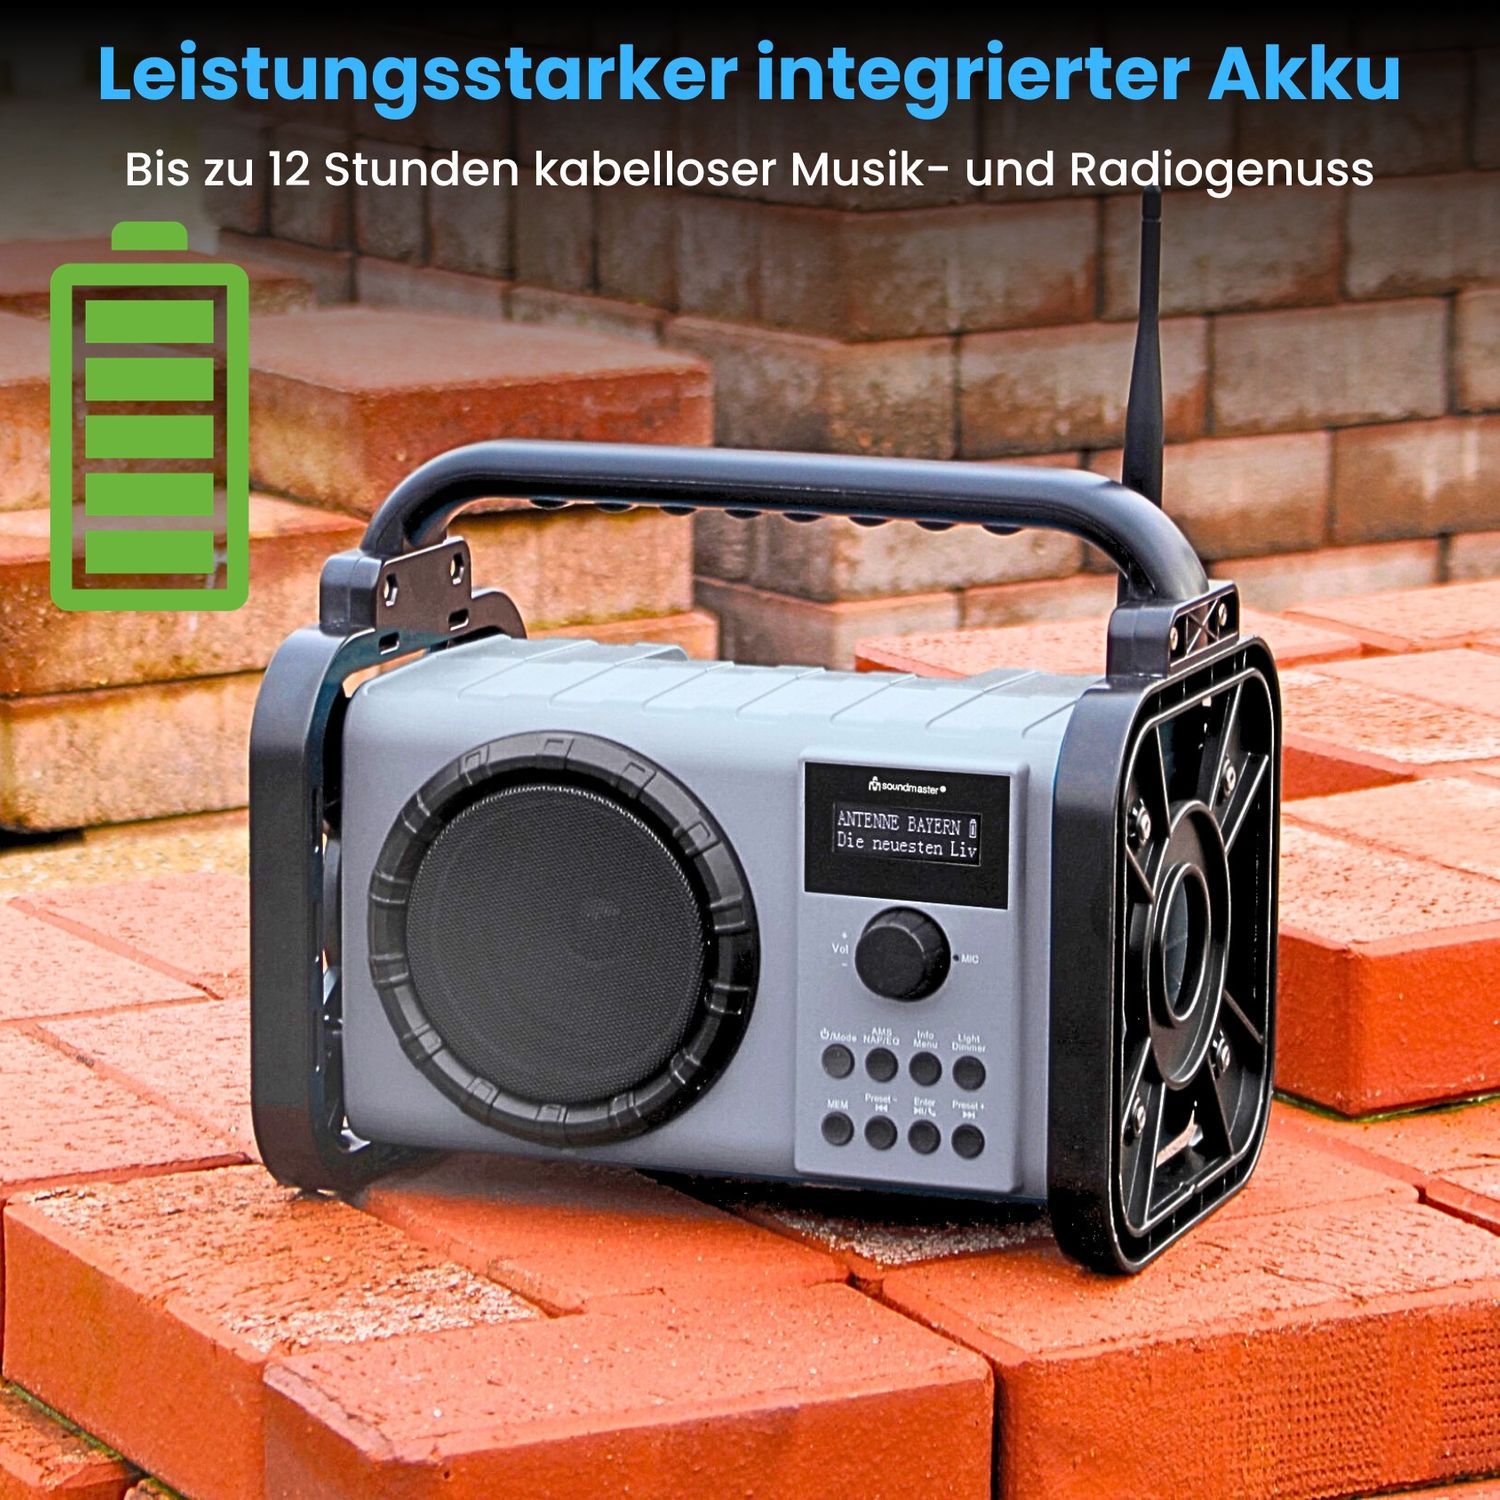 Radio de chantier Soundmaster DAB80OR avec DAB+ FM Bluetooth et batterie Li-Ion IP44 résistante à la poussière et aux éclaboussures